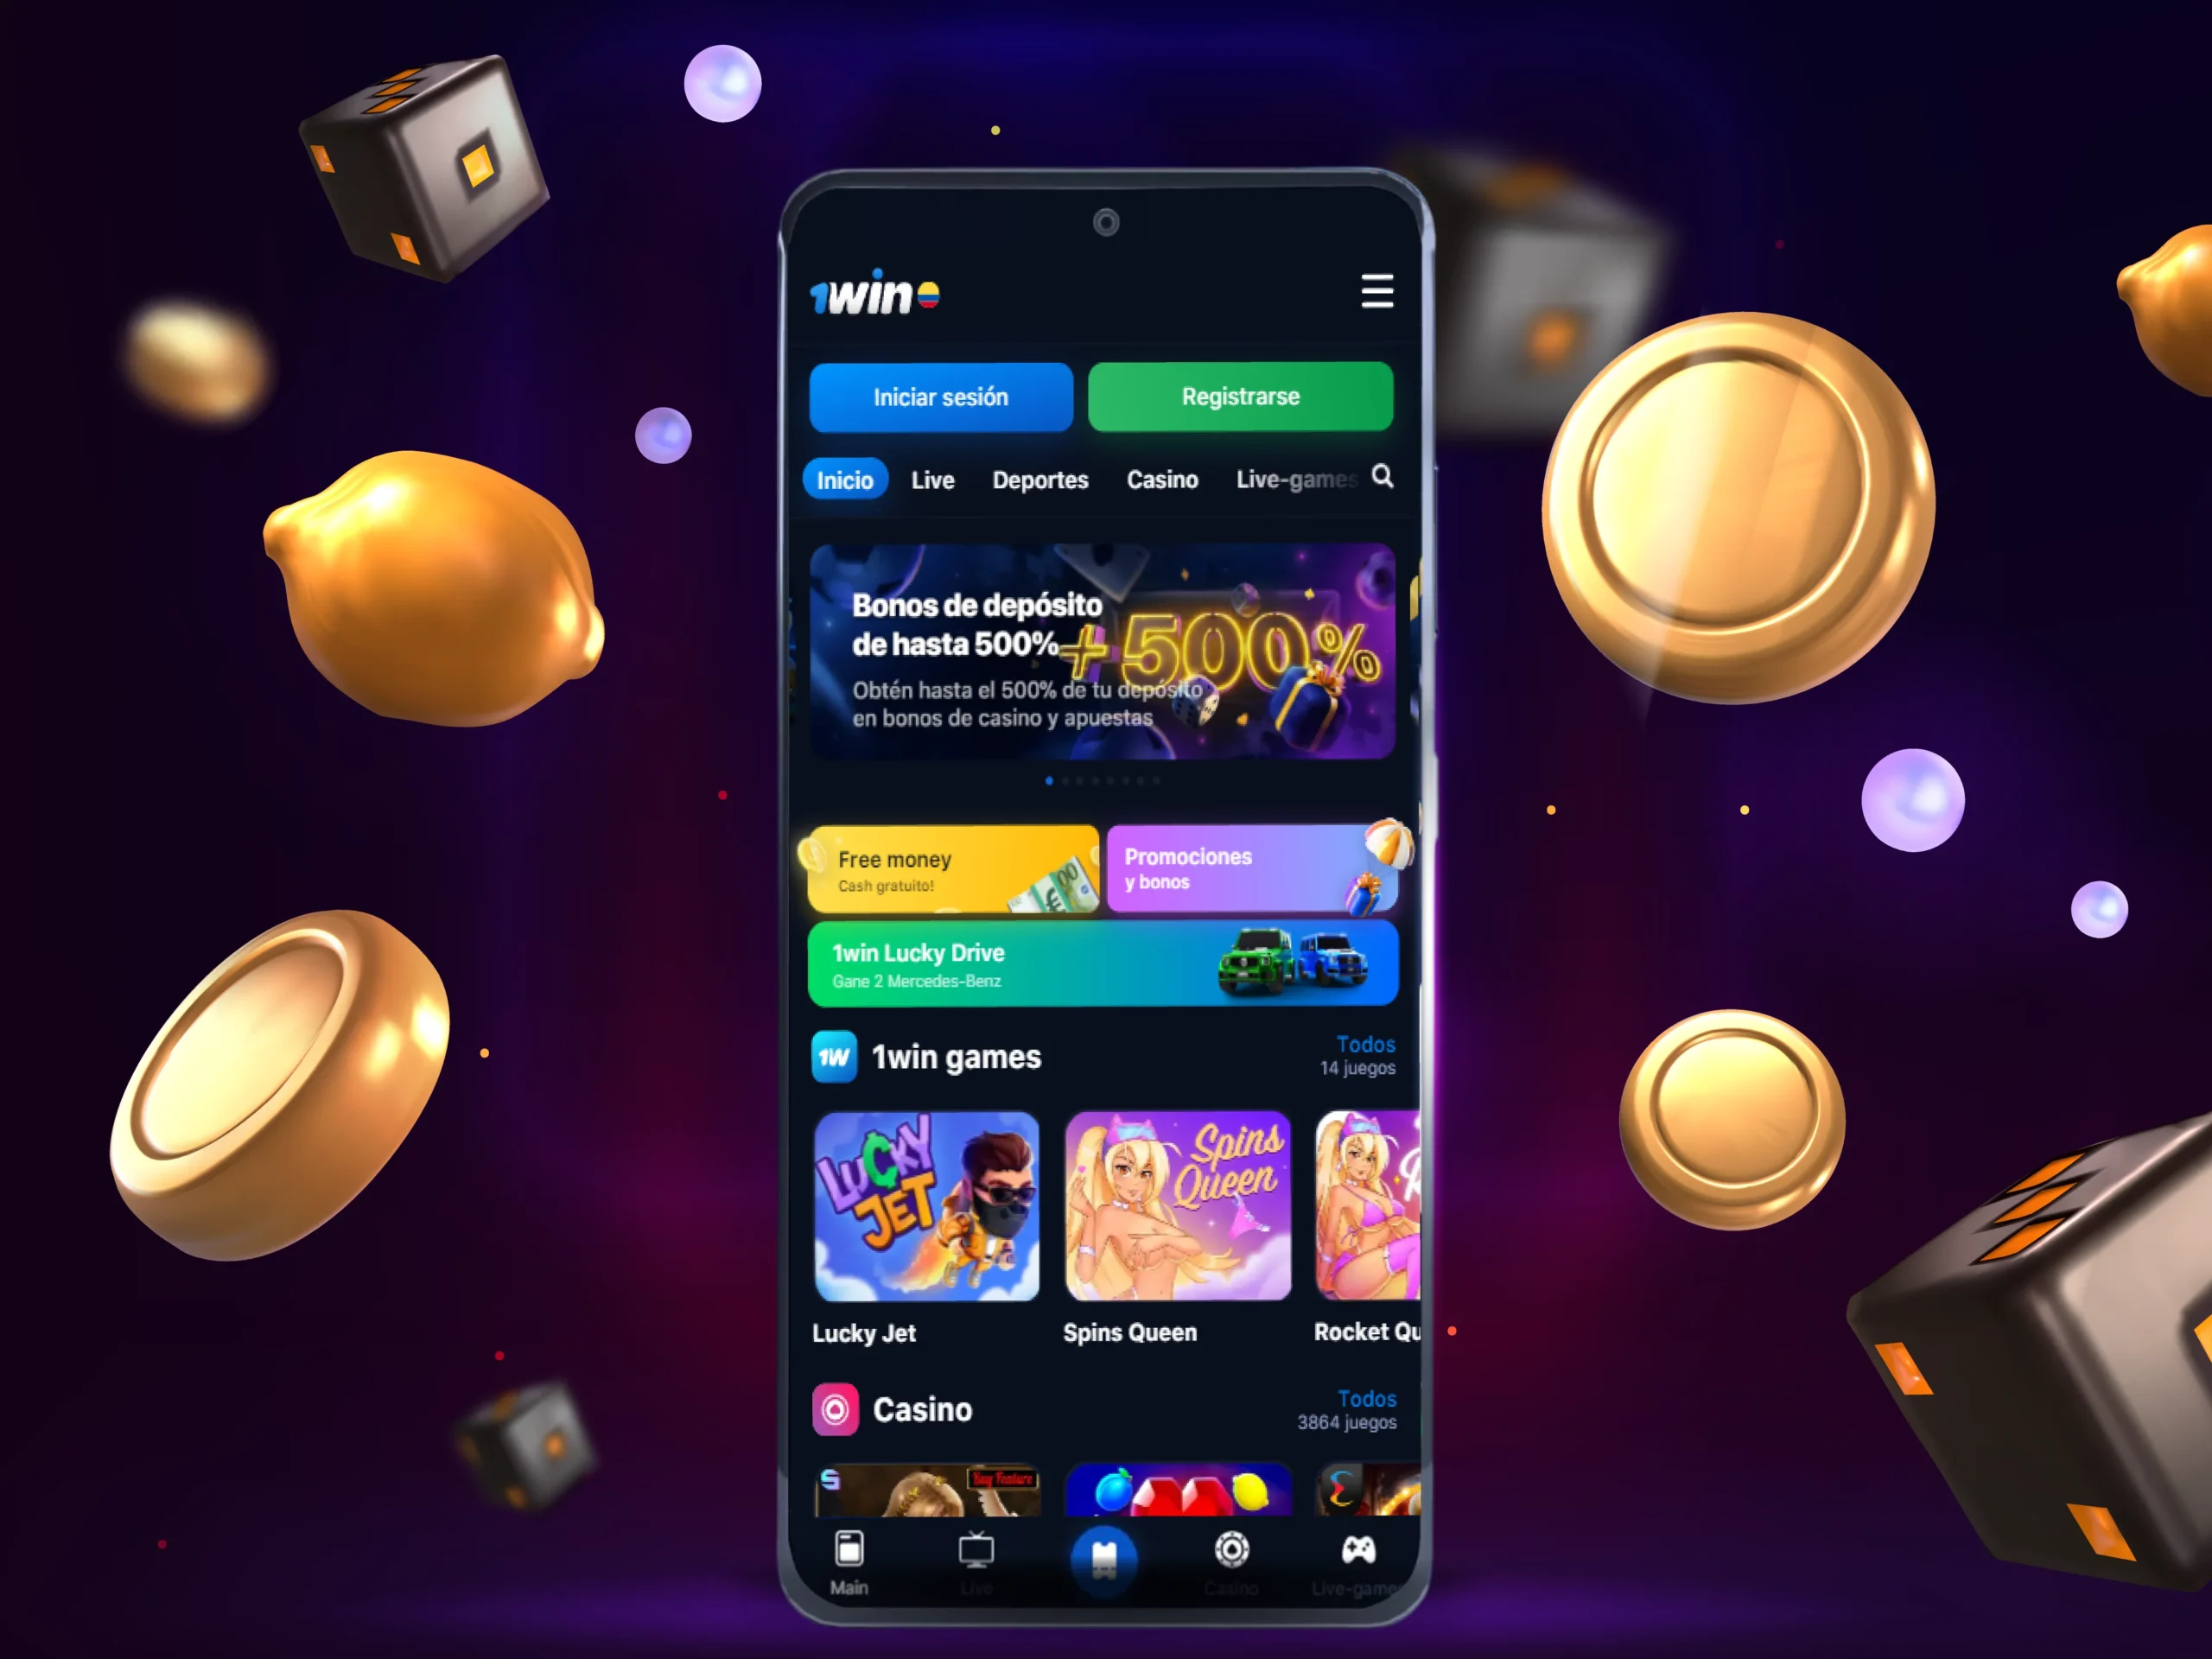 La sección de casino 1win presenta numerosos juegos en vivo y en línea, tragamonedas, juegos intensivos, loterías, bingo, juegos rápidos y otros.